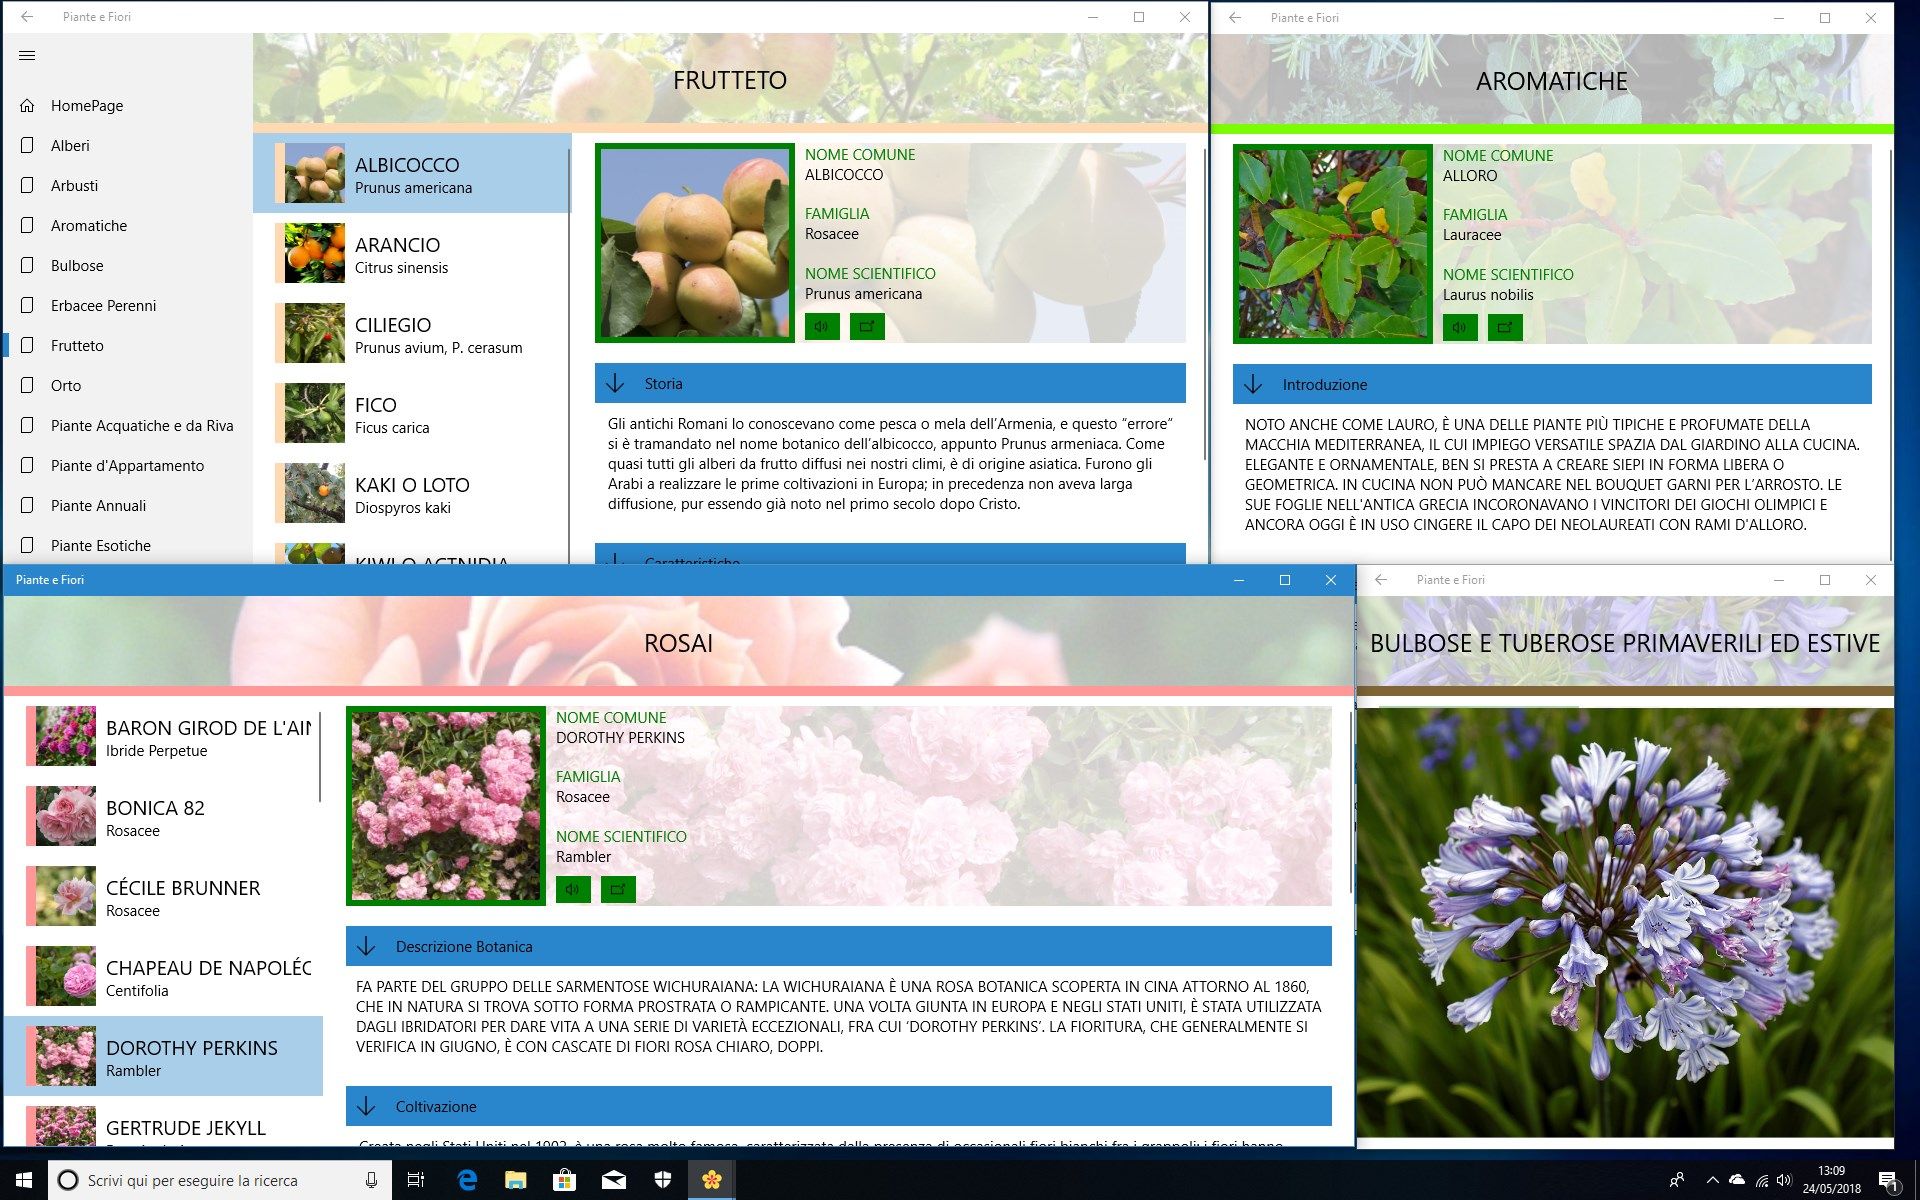 Visualizza più schede botaniche contemporaneamente!